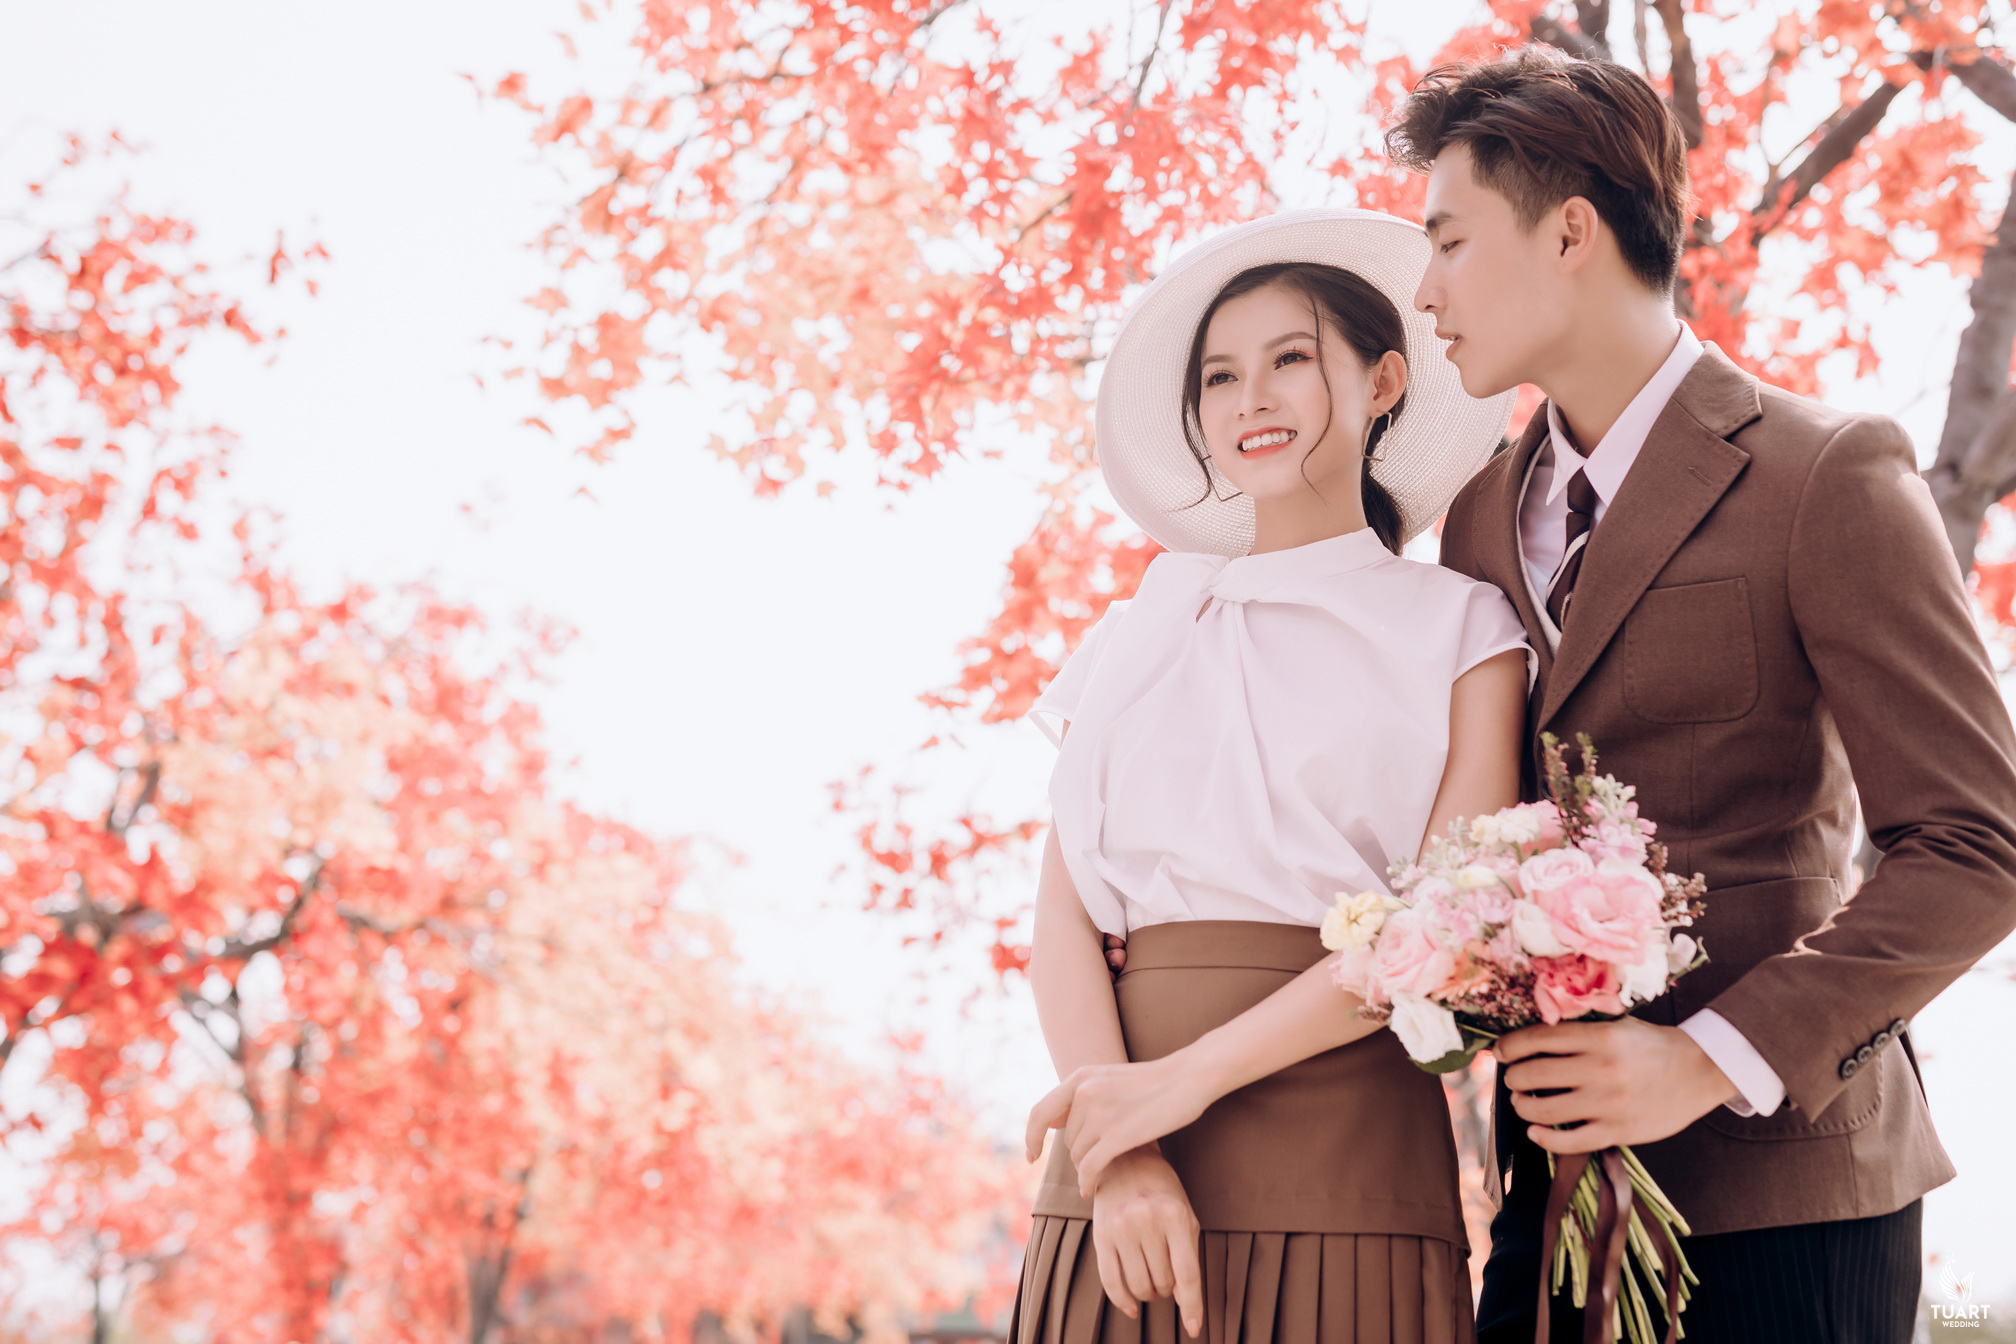 Tư vấn địa điểm chụp ảnh cưới đẹp mùa xuân tại Hà Nội